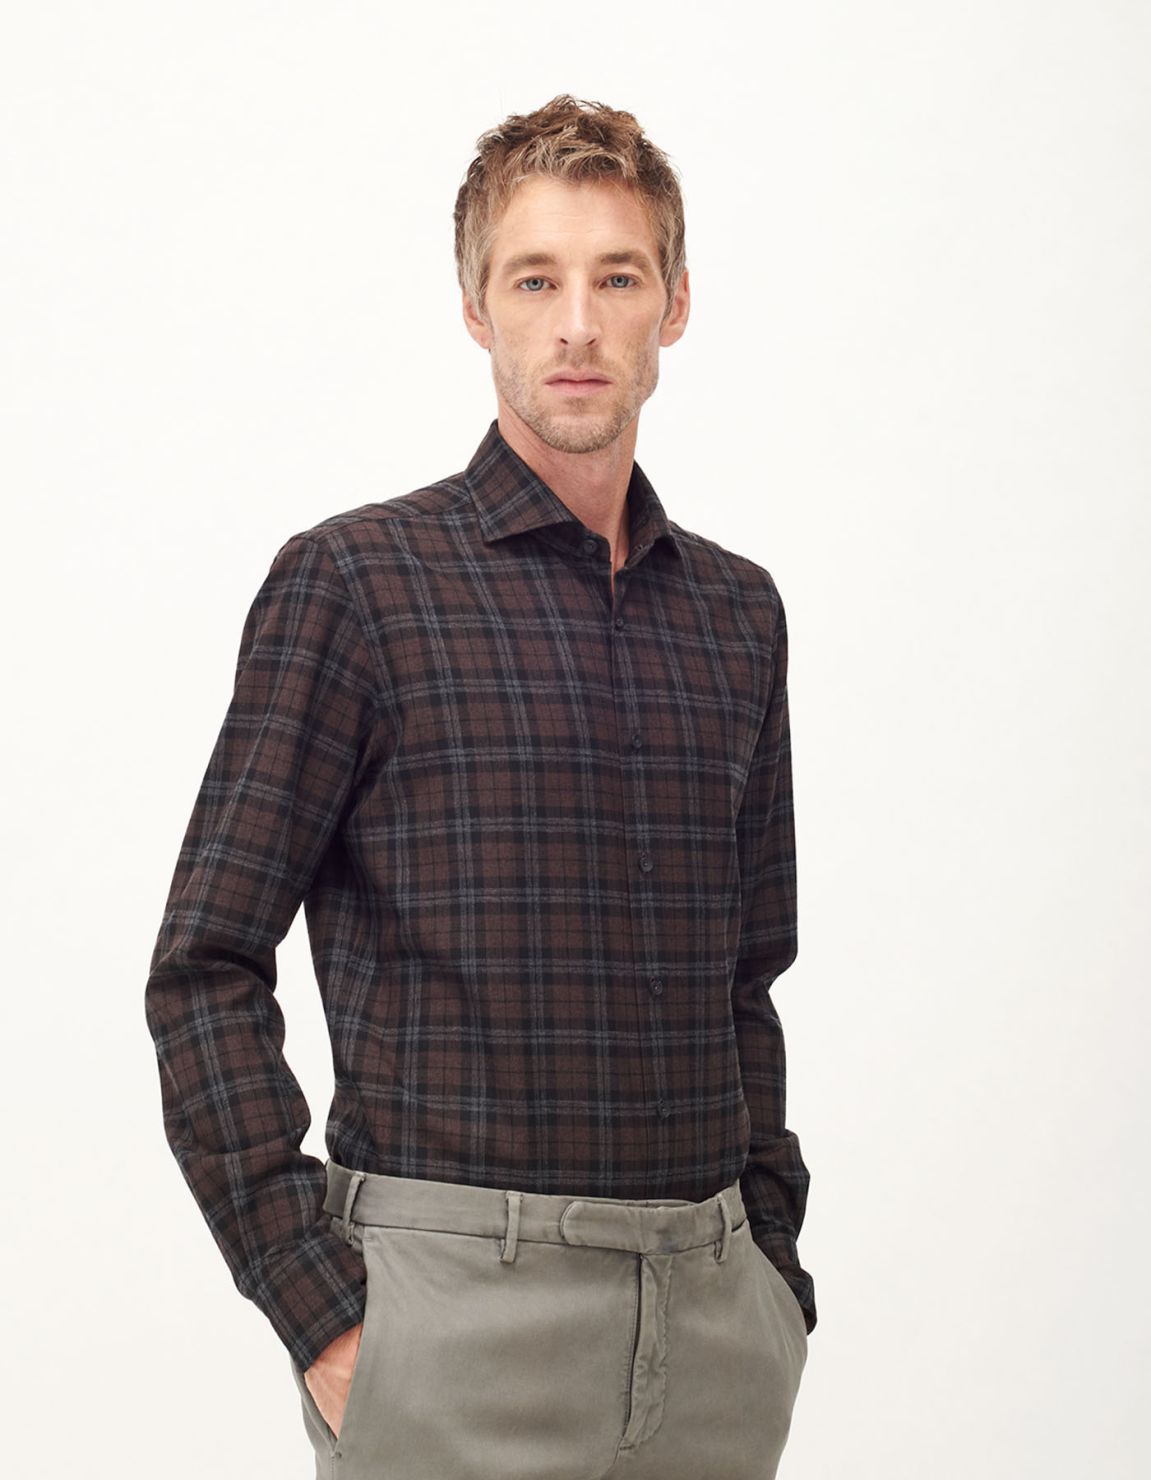 Shirt Collar cutaway Brown Textured Tailor Custom Fit 1